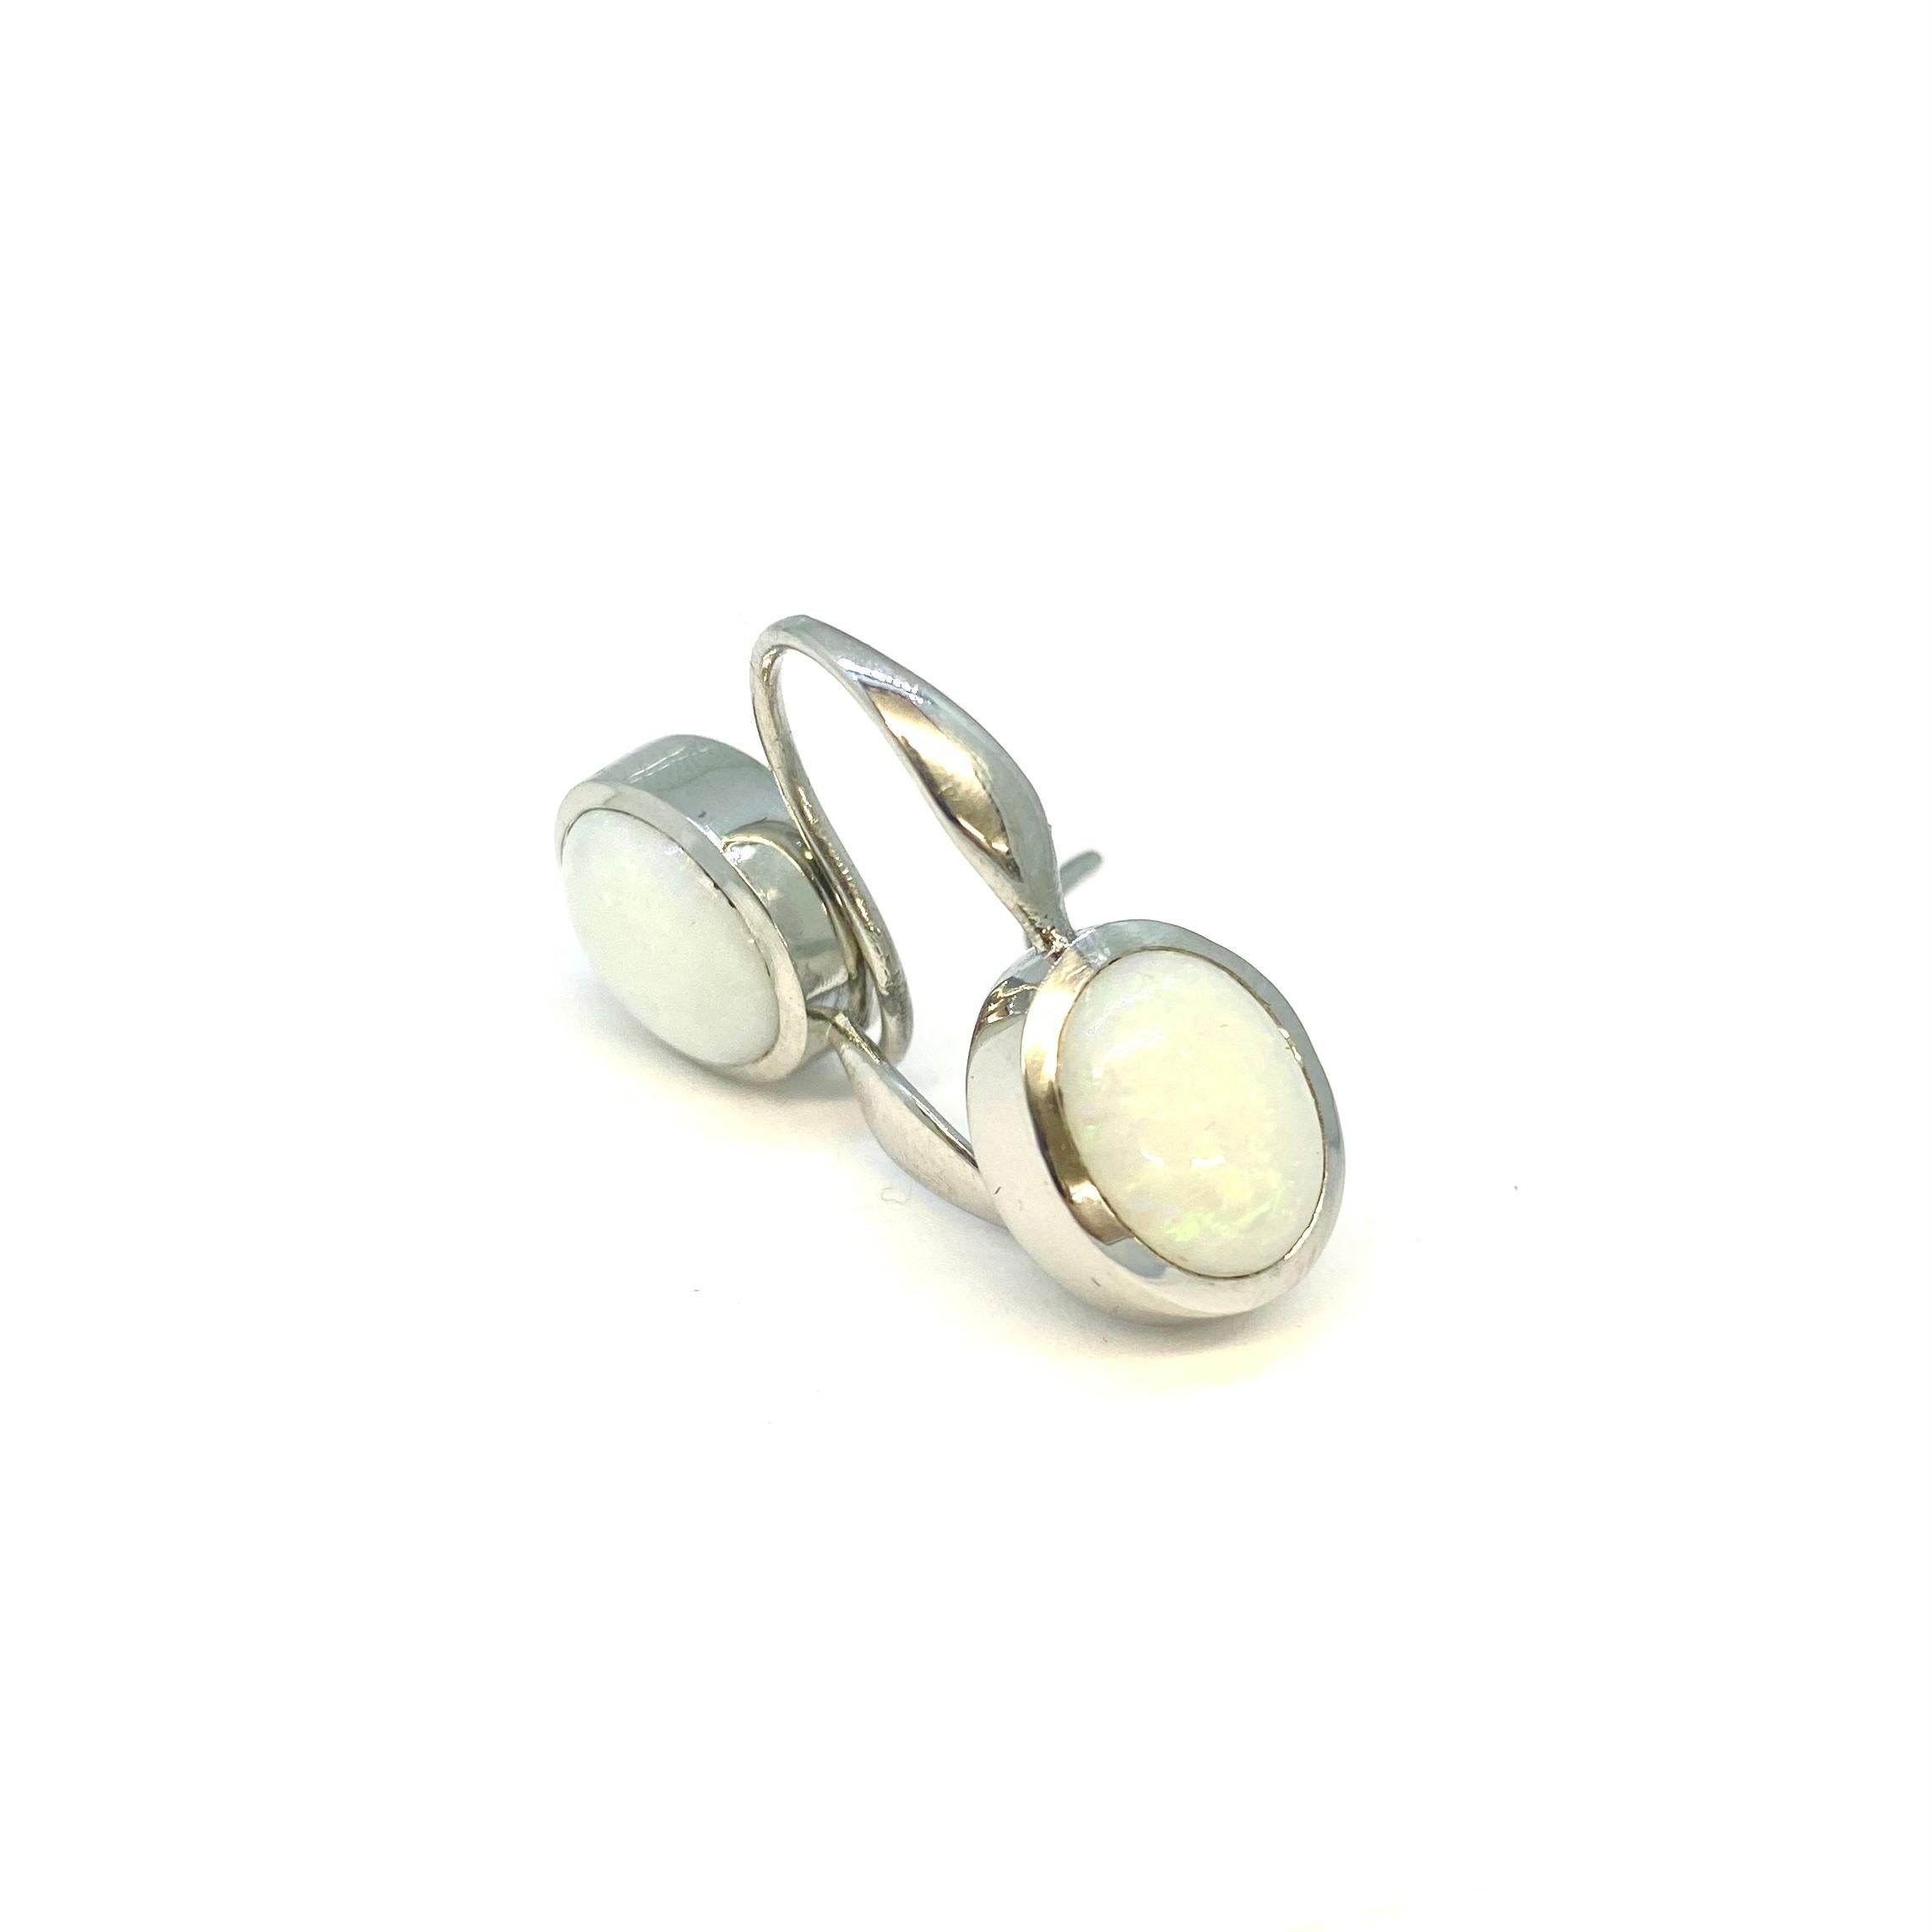 Boucles d'oreilles en platine 950 poli avec 2 opales australiennes blanches, taille cabochon, 5.10ct.

Lesunja est une marque connue pour sa collection de bijoux luxueux. Leur collection de boucles d'oreilles ne fait pas exception, avec un éventail